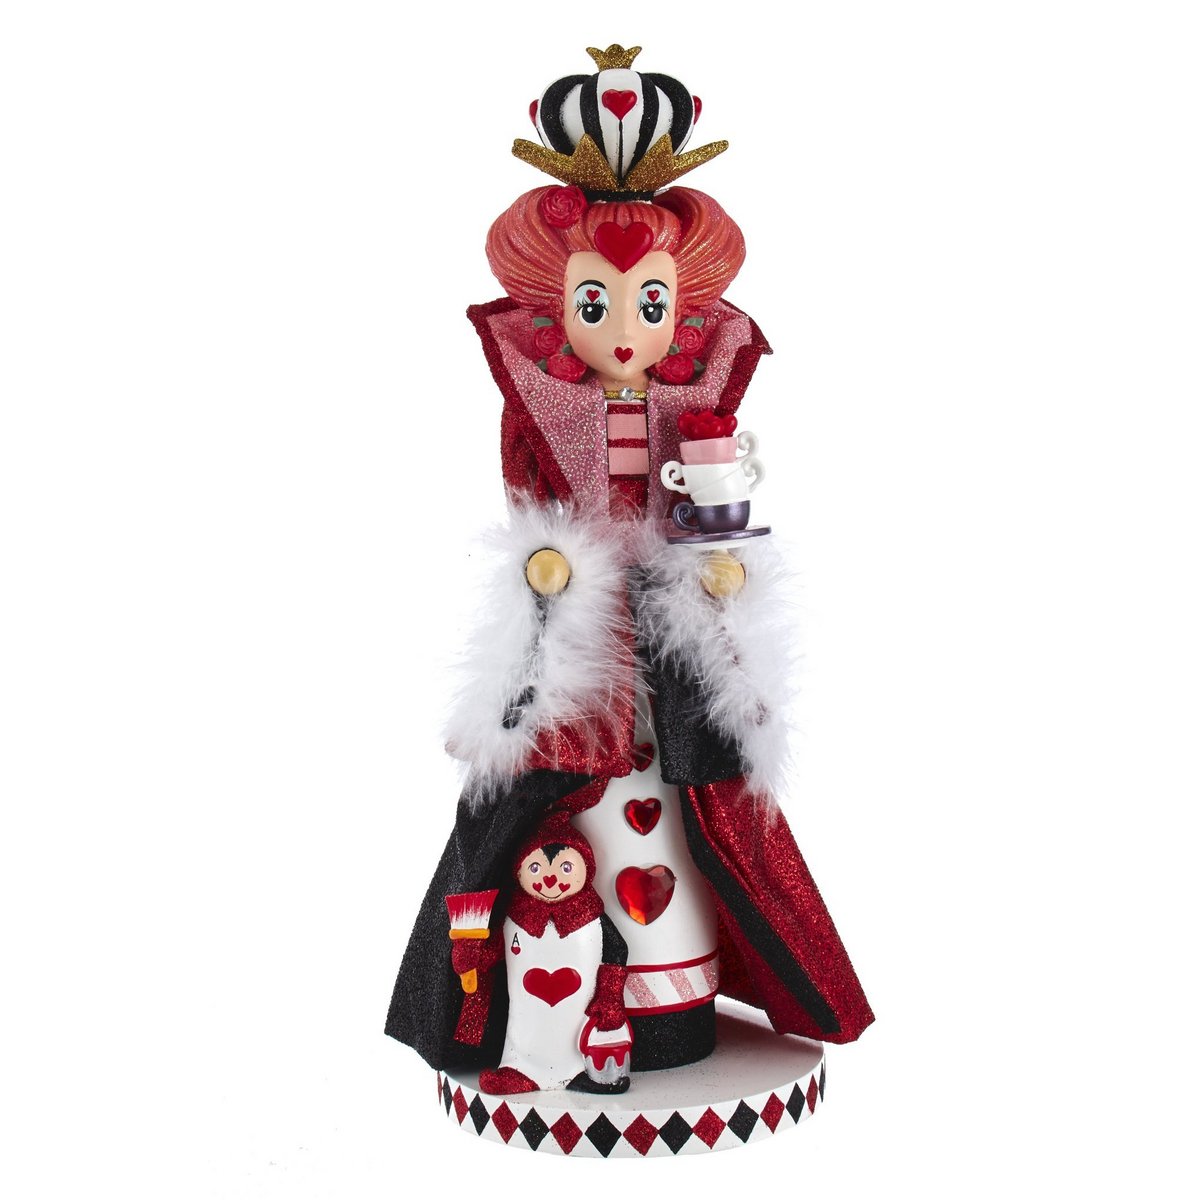 Kurt S. Adler Alice in Wonderland Nutcracker Queen Of Hearts